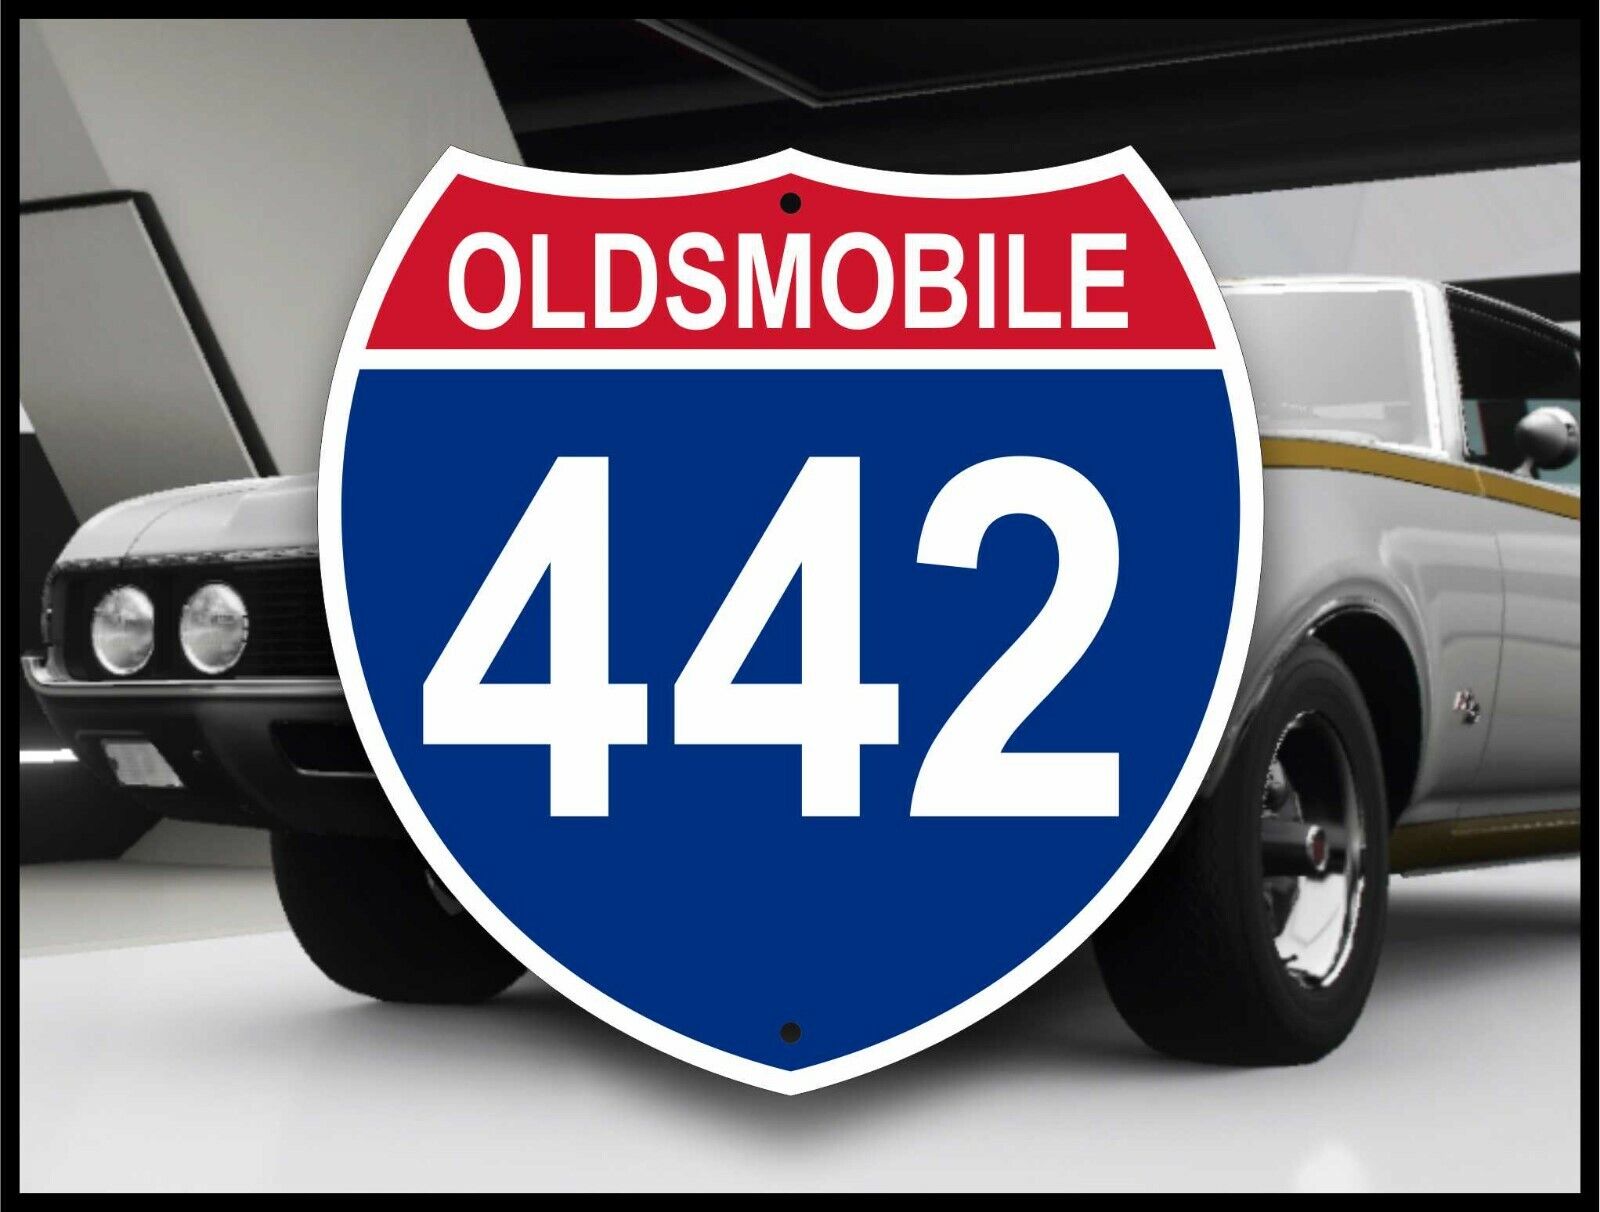 Oldsmobile 442 - Interstate Sign - American Muscle Car - Hotrod - Garage Decor 